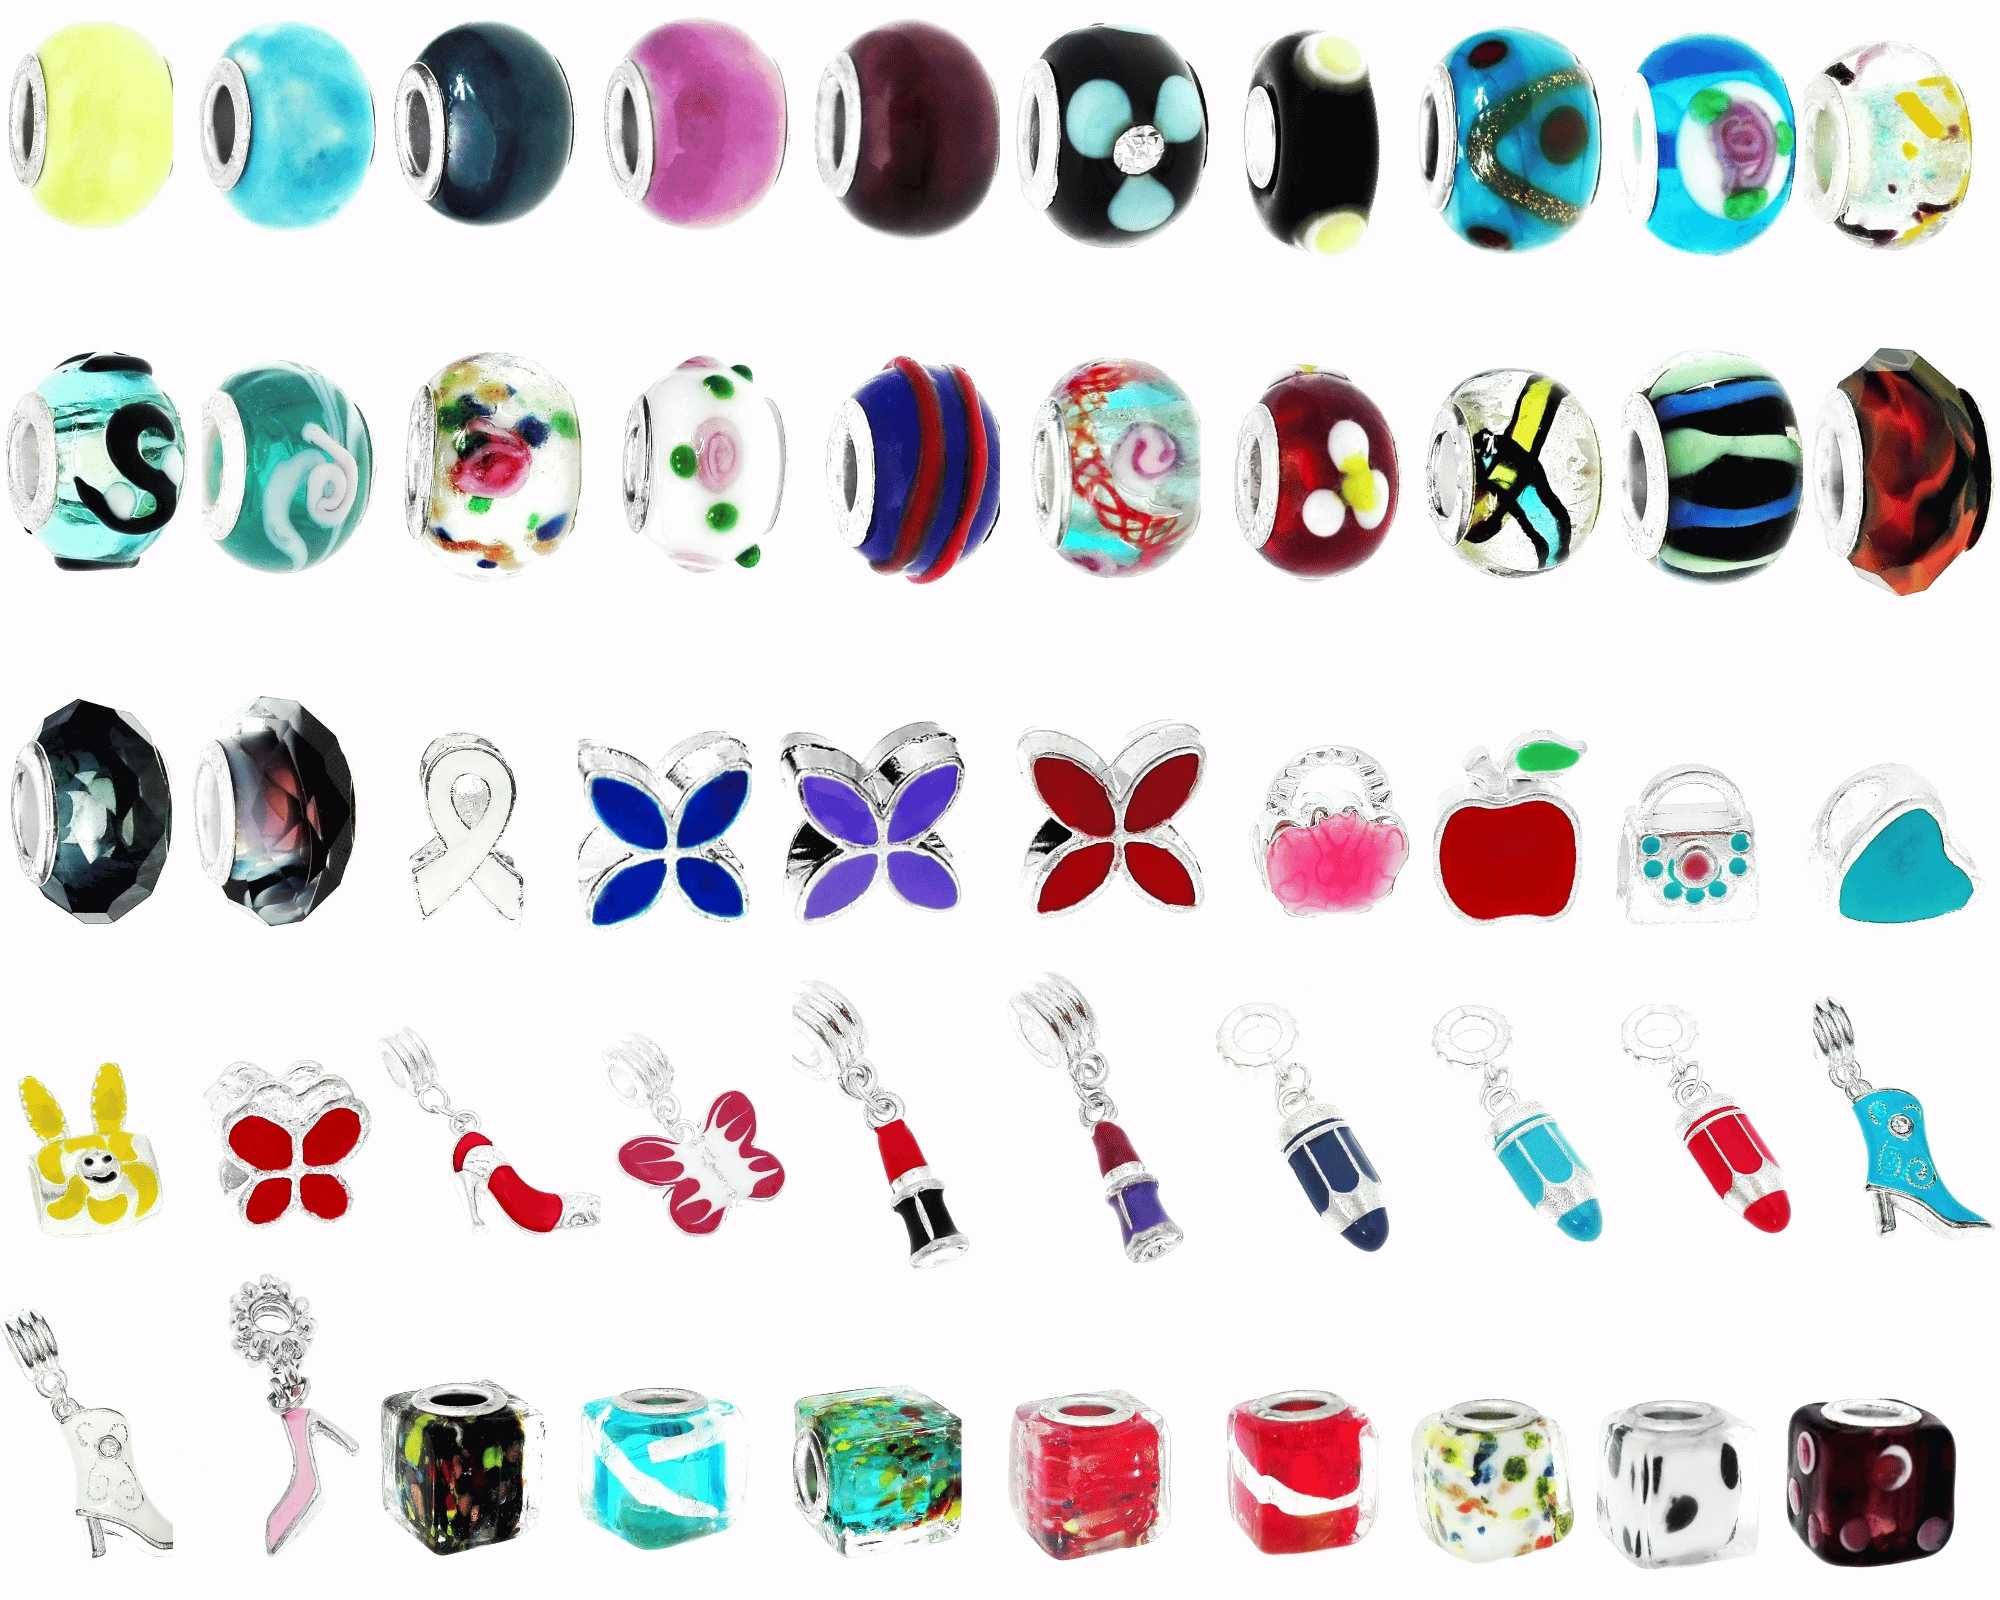 Zawieszki Beads mix wzorów kolorów zestaw 50 zawieszek do bransoletek